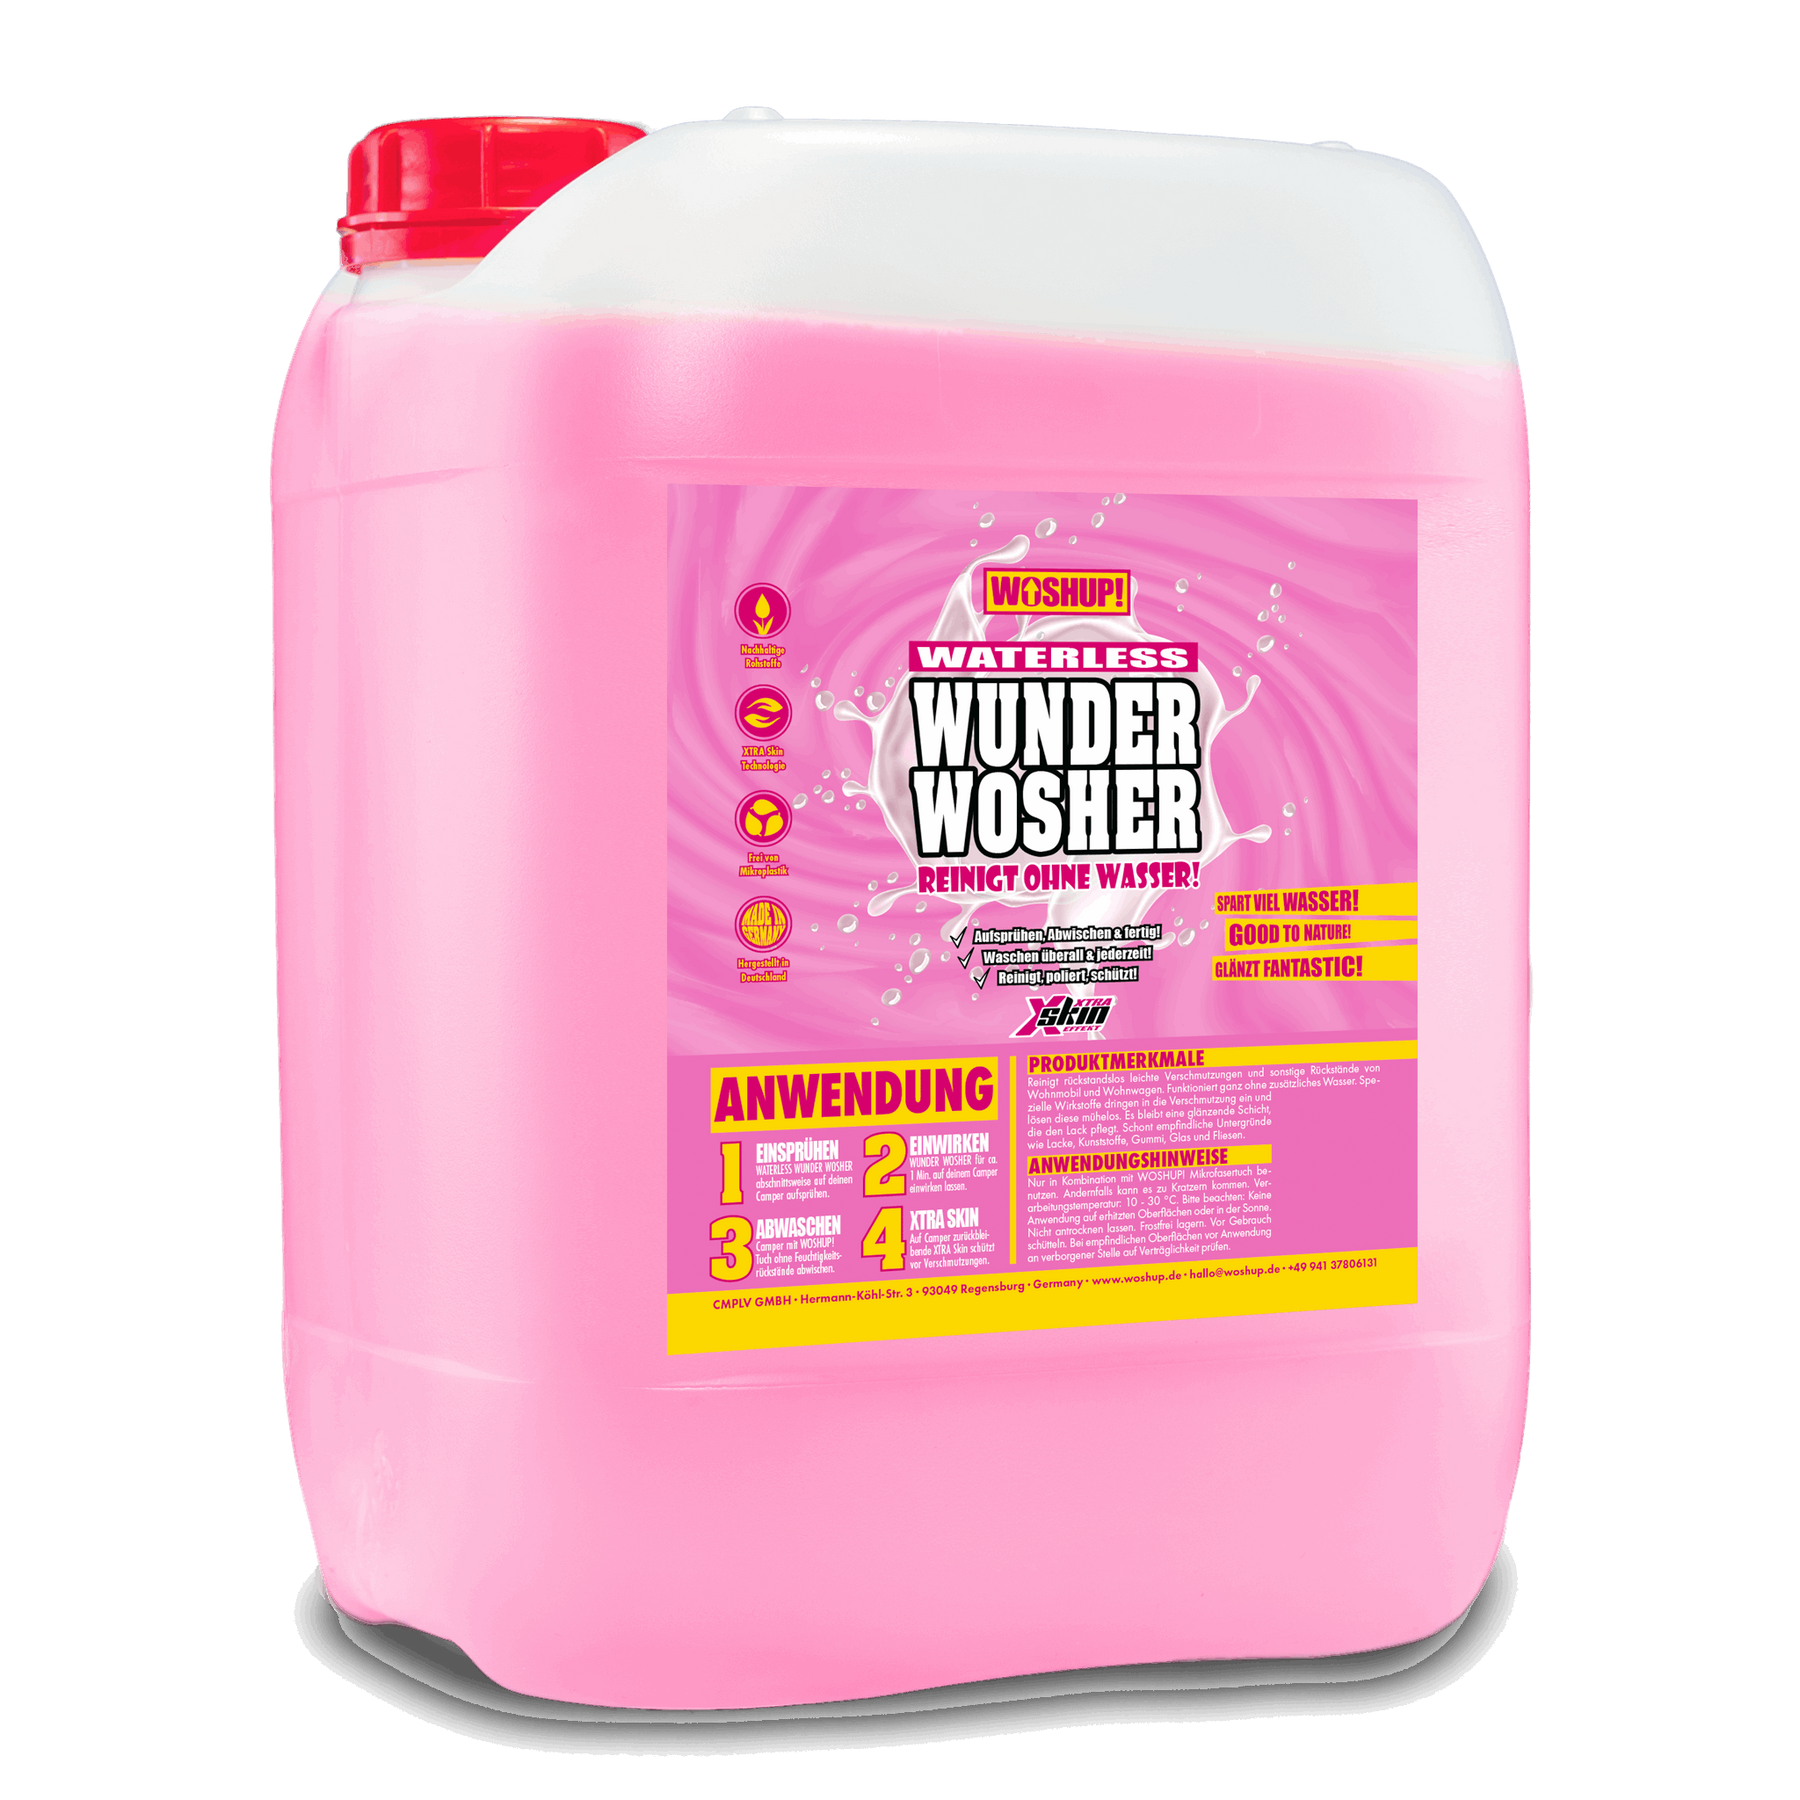 B2B: Waterless Wunder Wosher WOSHUP